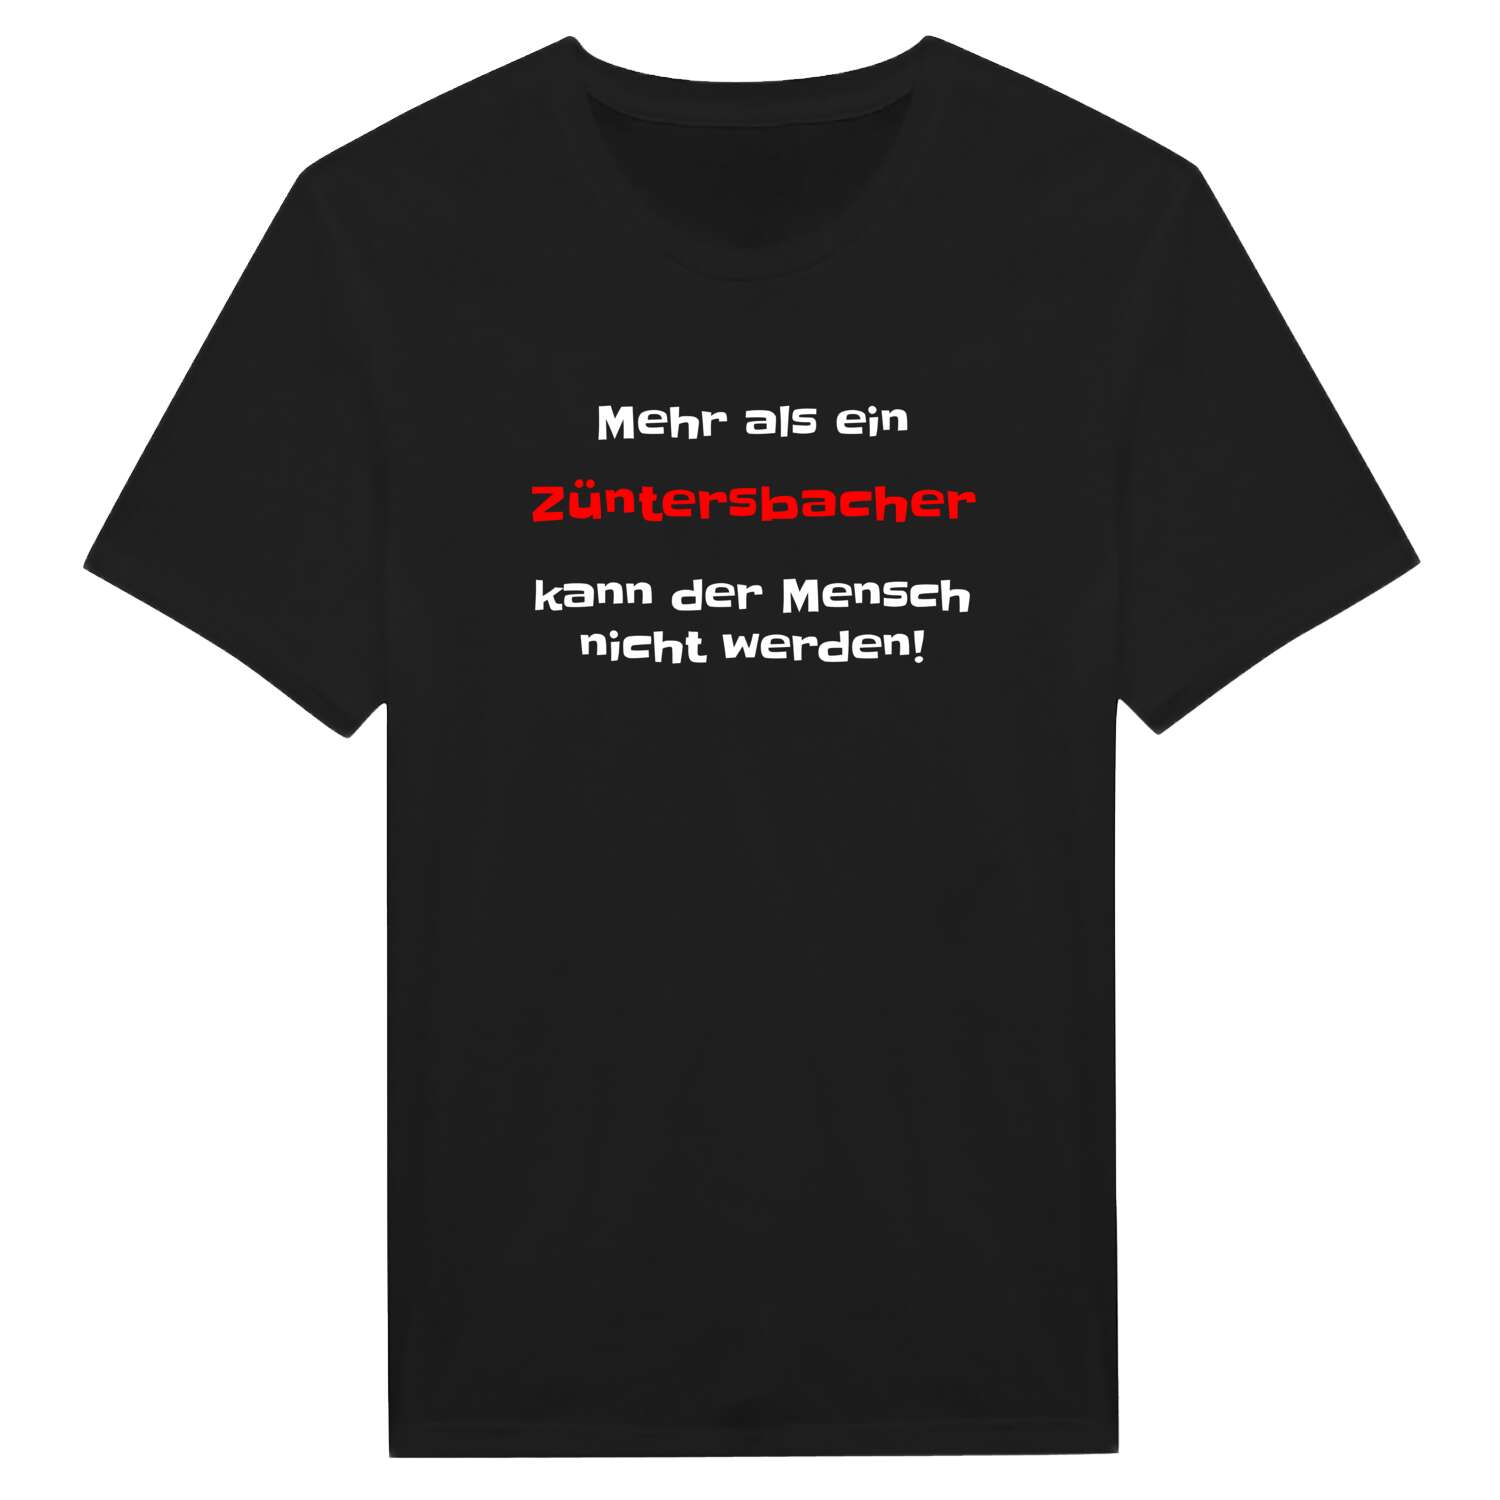 Züntersbach T-Shirt »Mehr als ein«